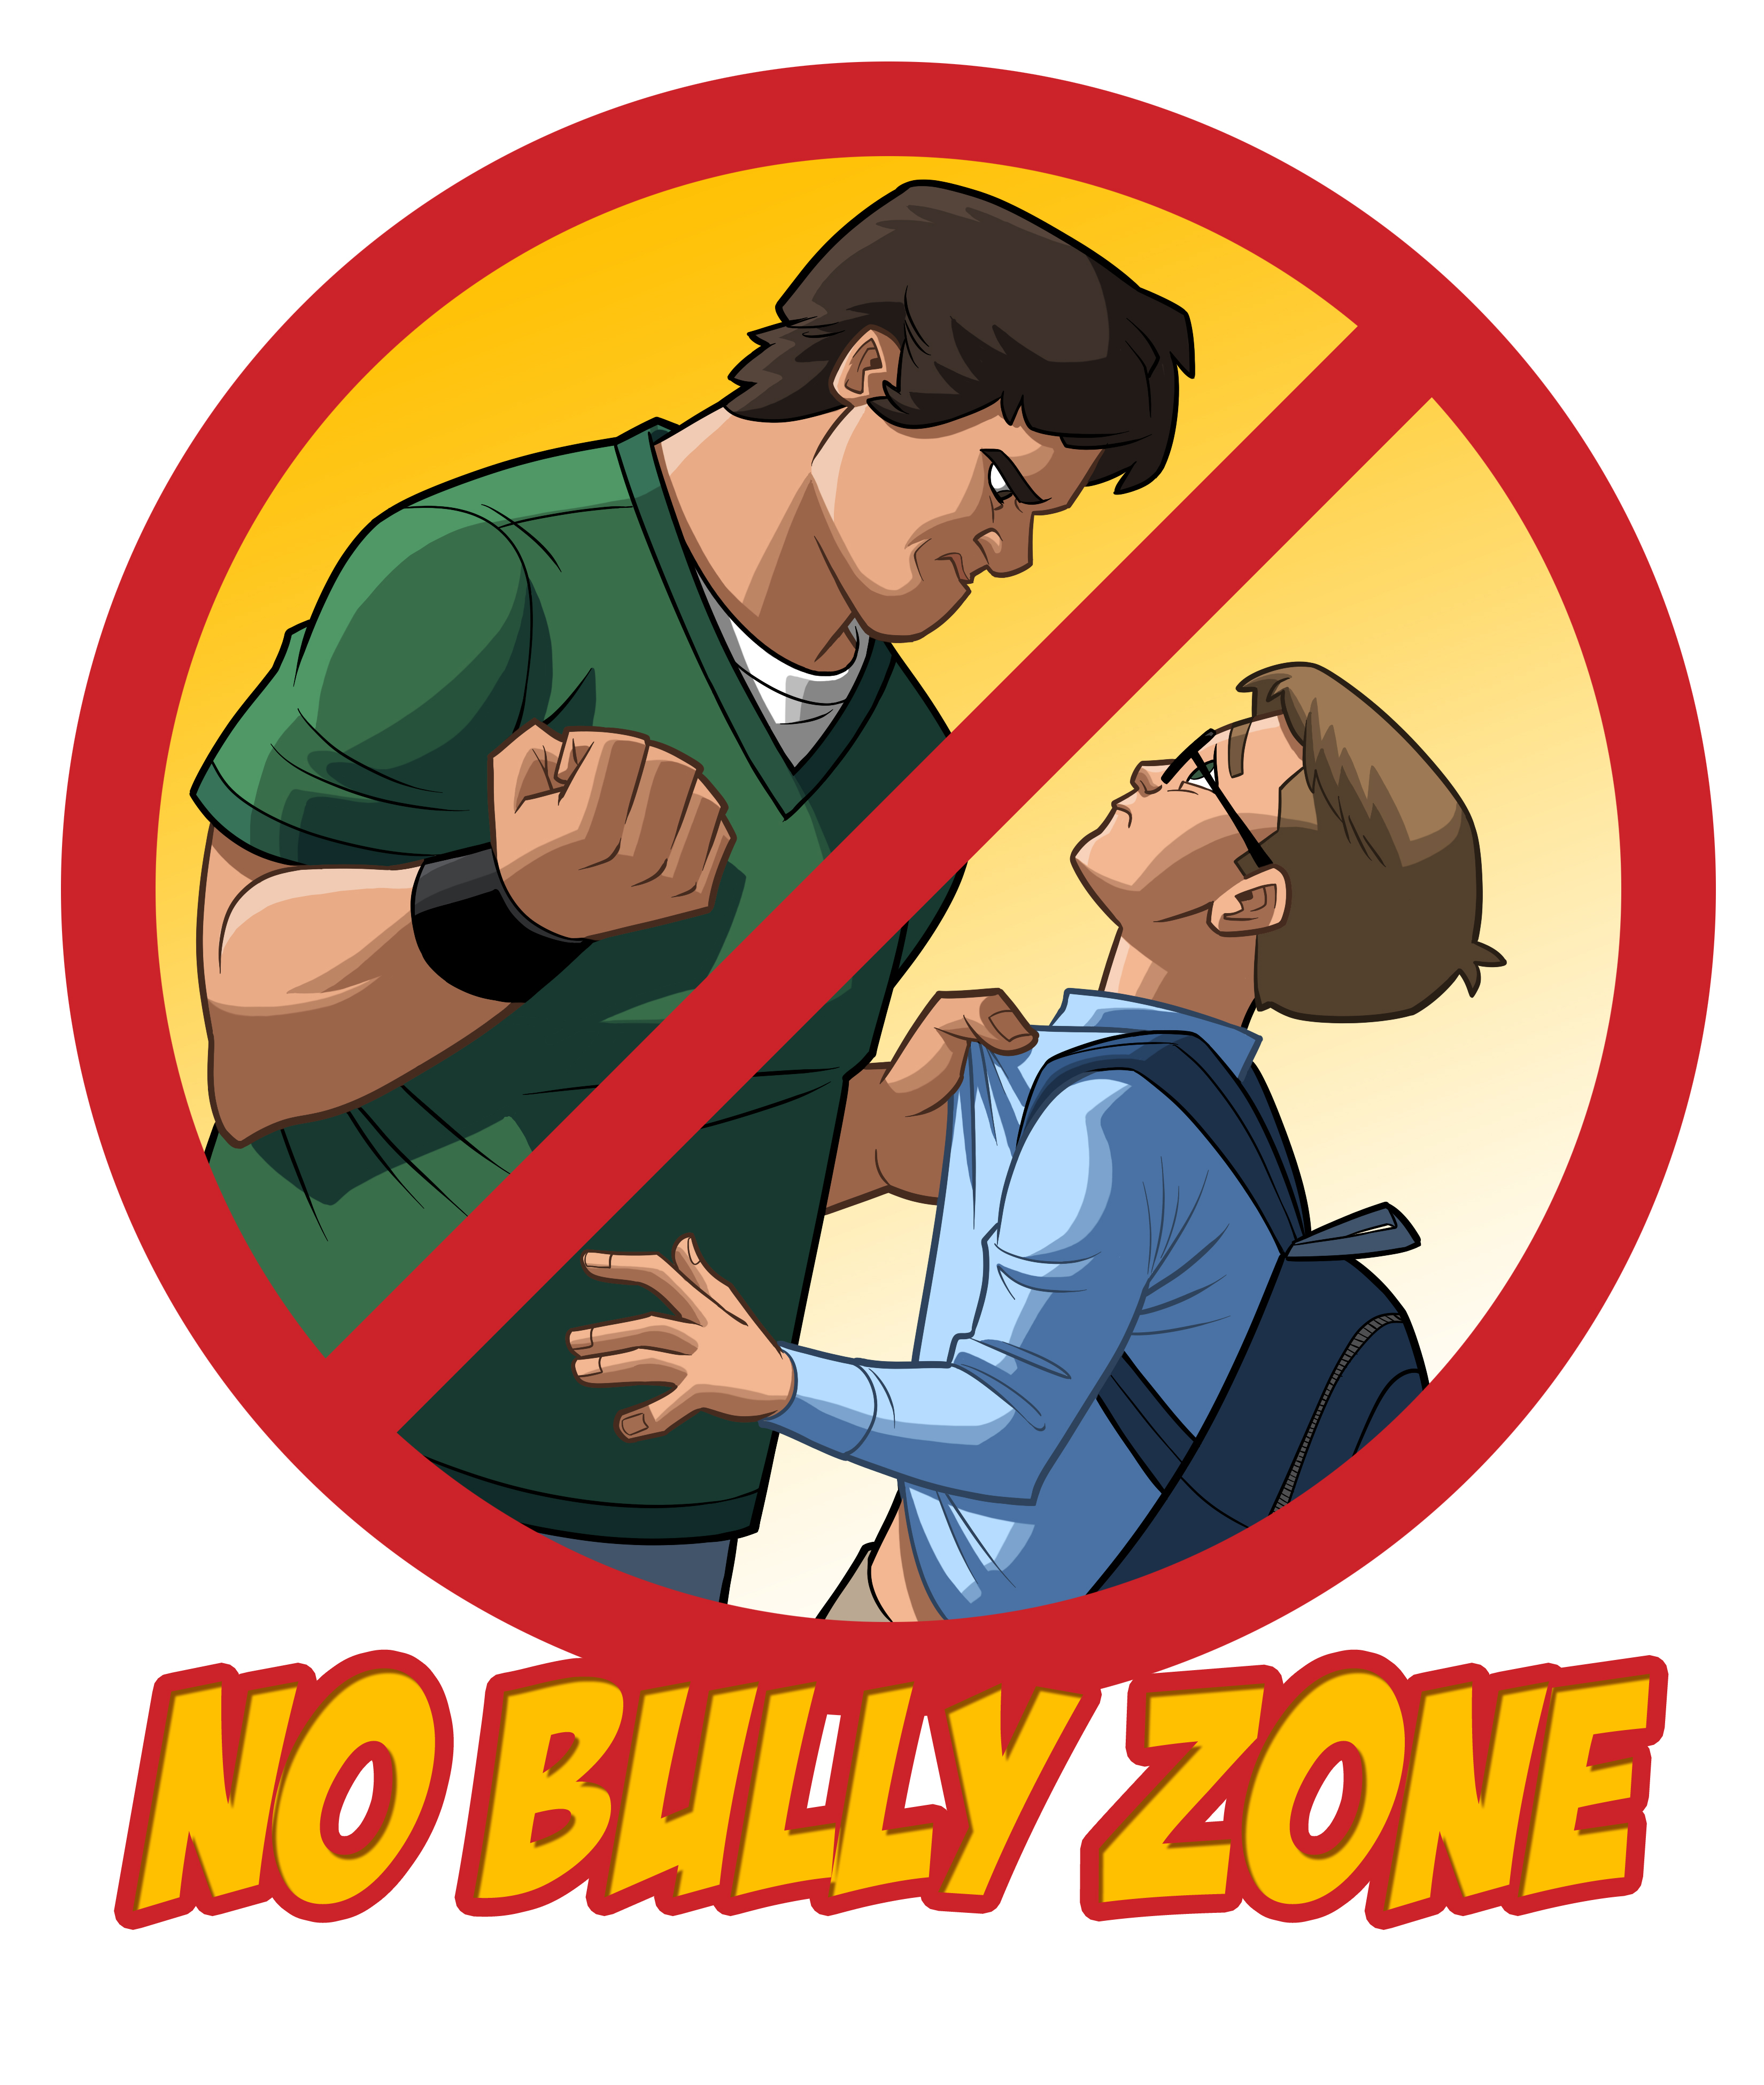 stop-bullying-cartoon-177735.jpg